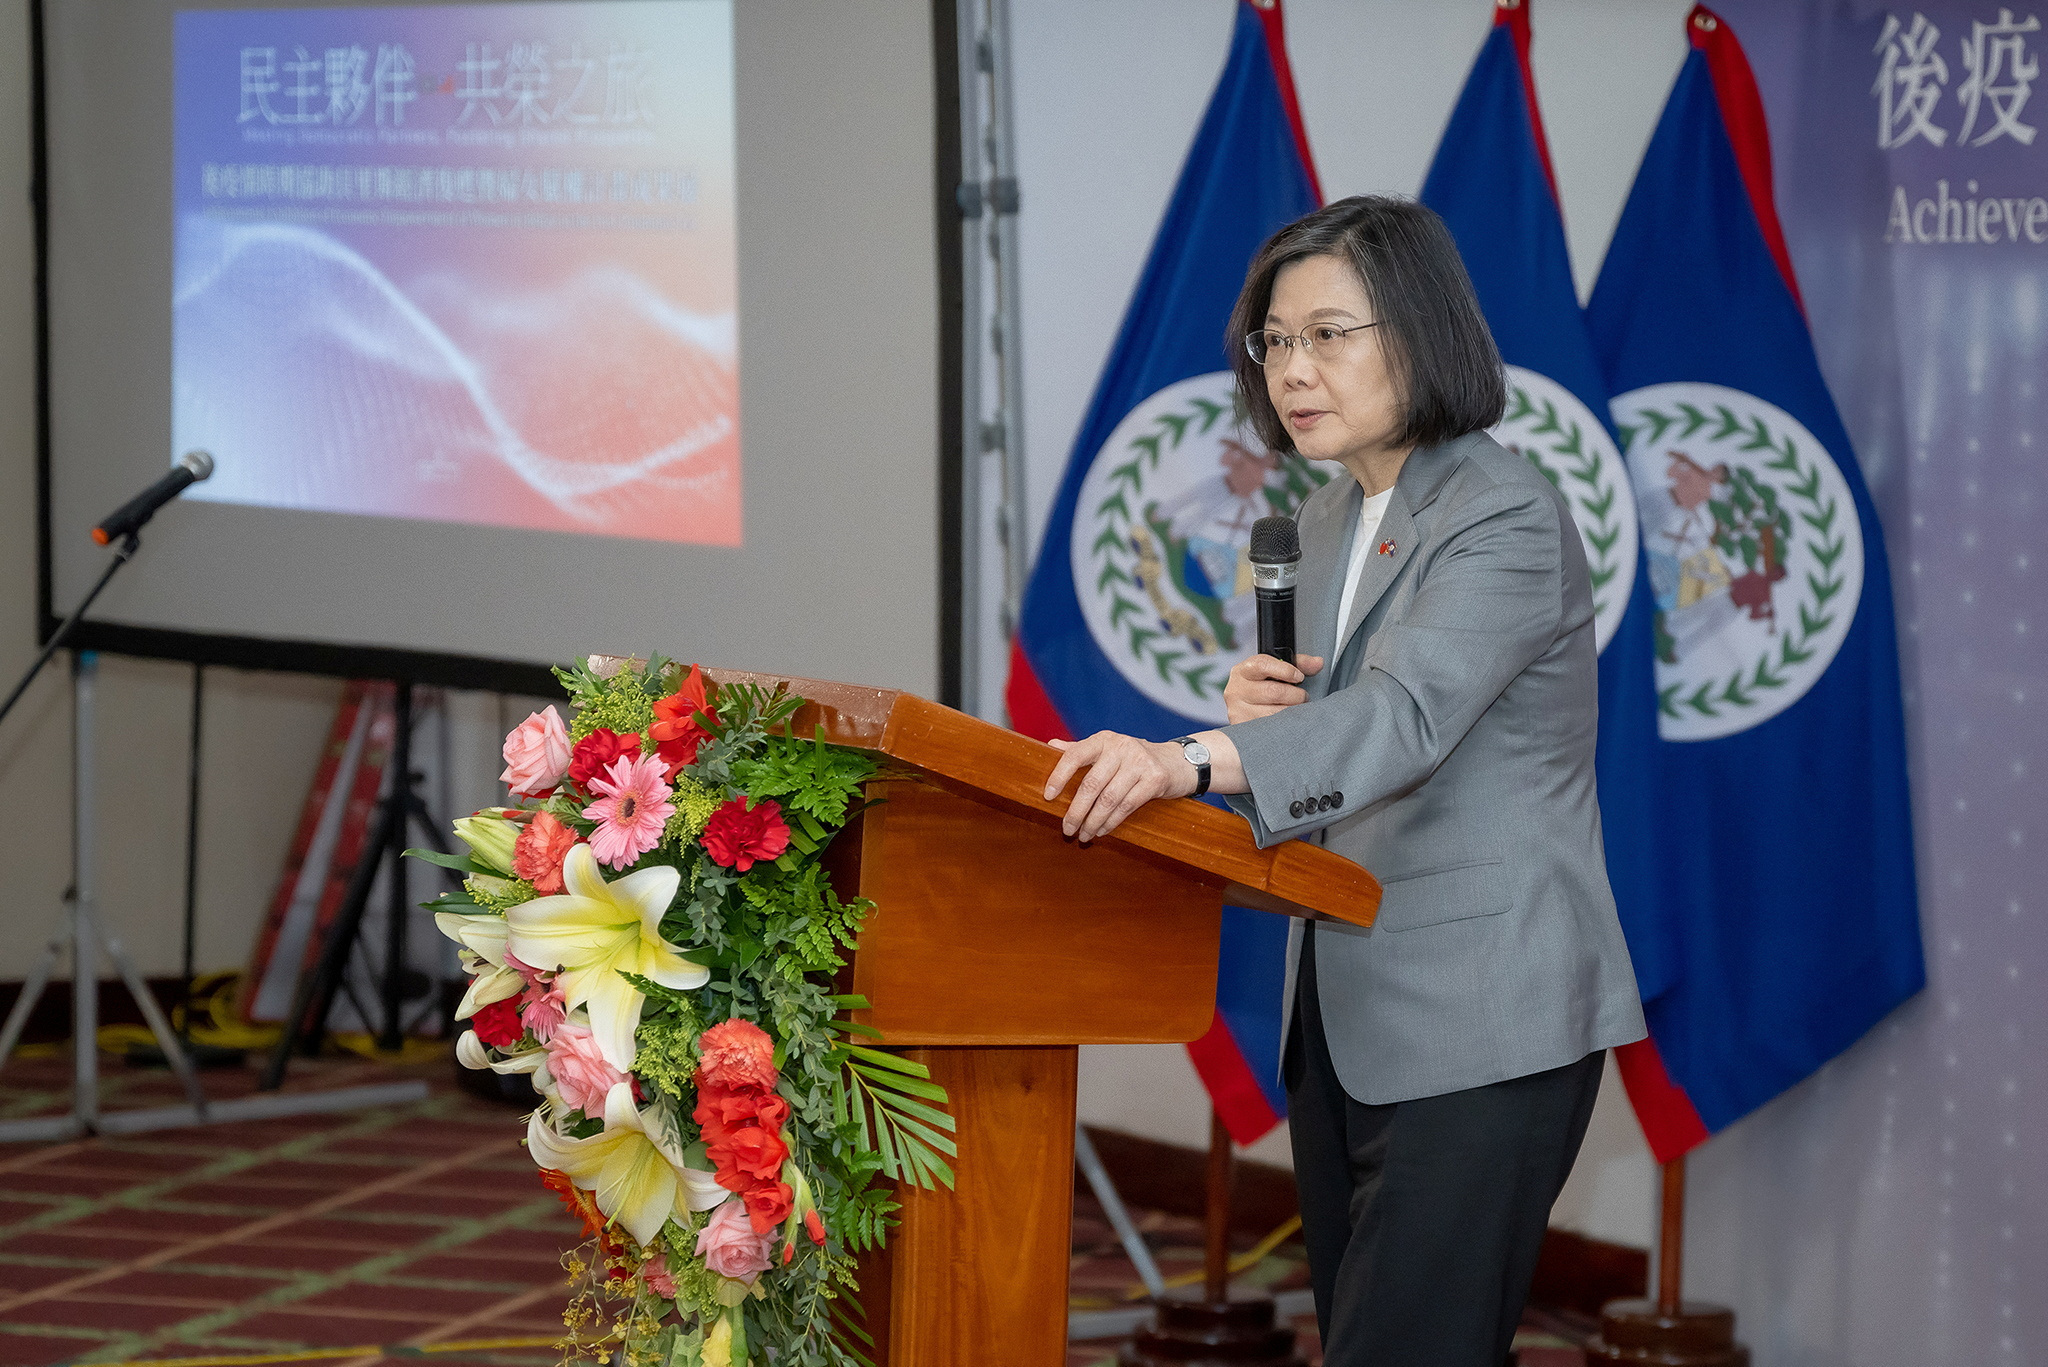 Ο πρόεδρος της Ταϊβάν Tsai Ing-wen μιλάει κατά τη διάρκεια εκδήλωσης για την ενδυνάμωση των γυναικών στο Μπελίζ